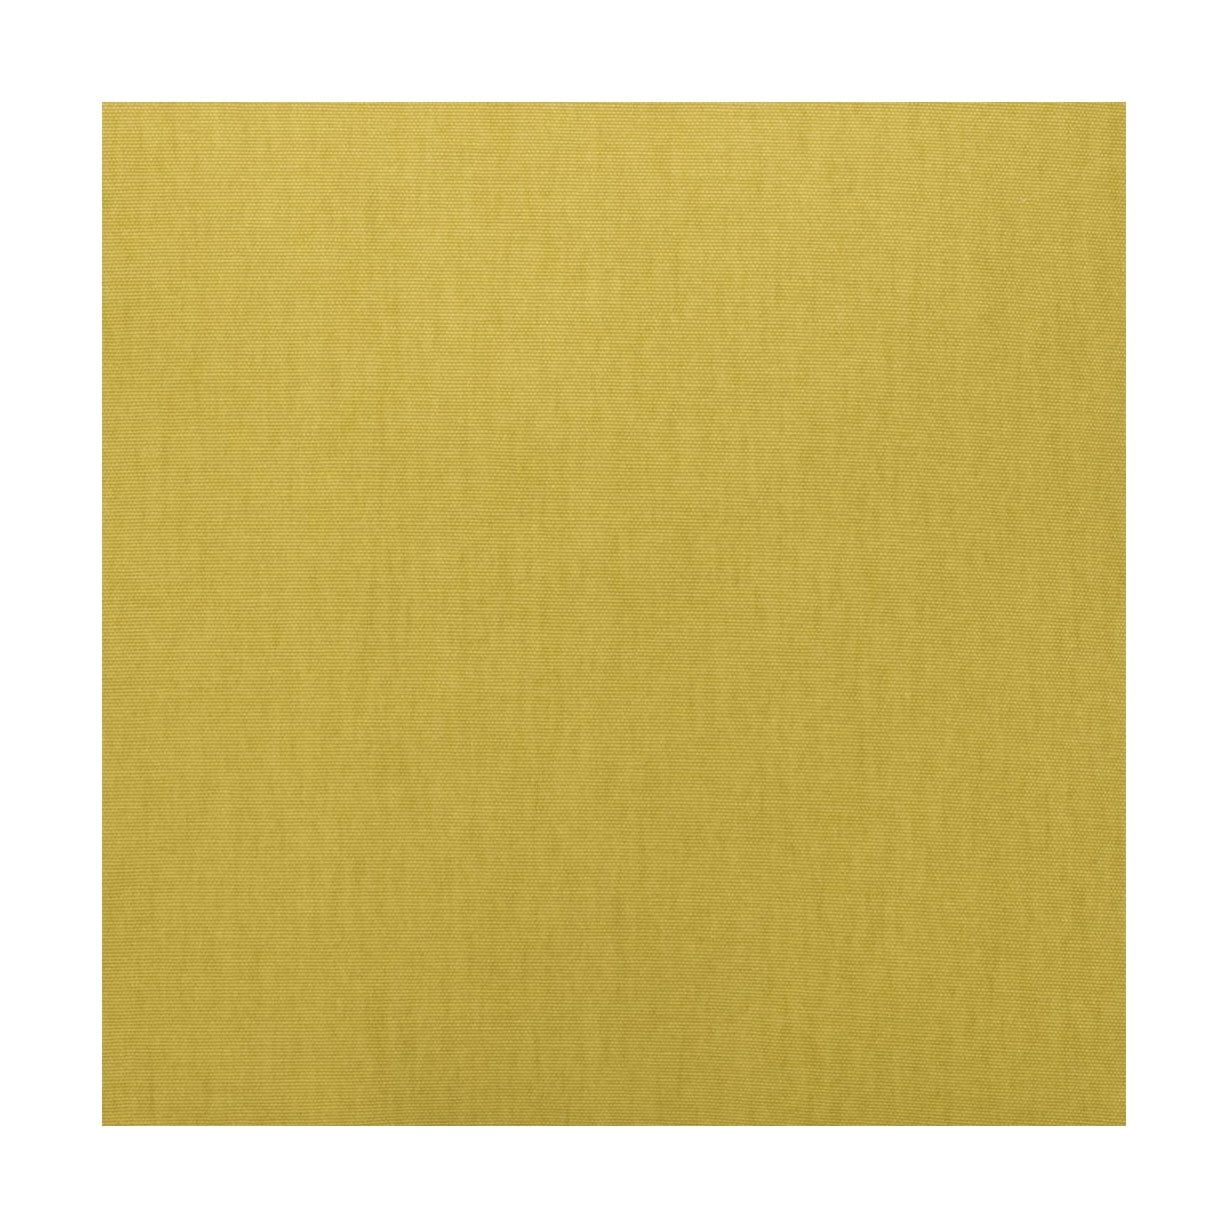 Spira Klotz Fabric Width 150 Cm (Price Per Meter), Yellow